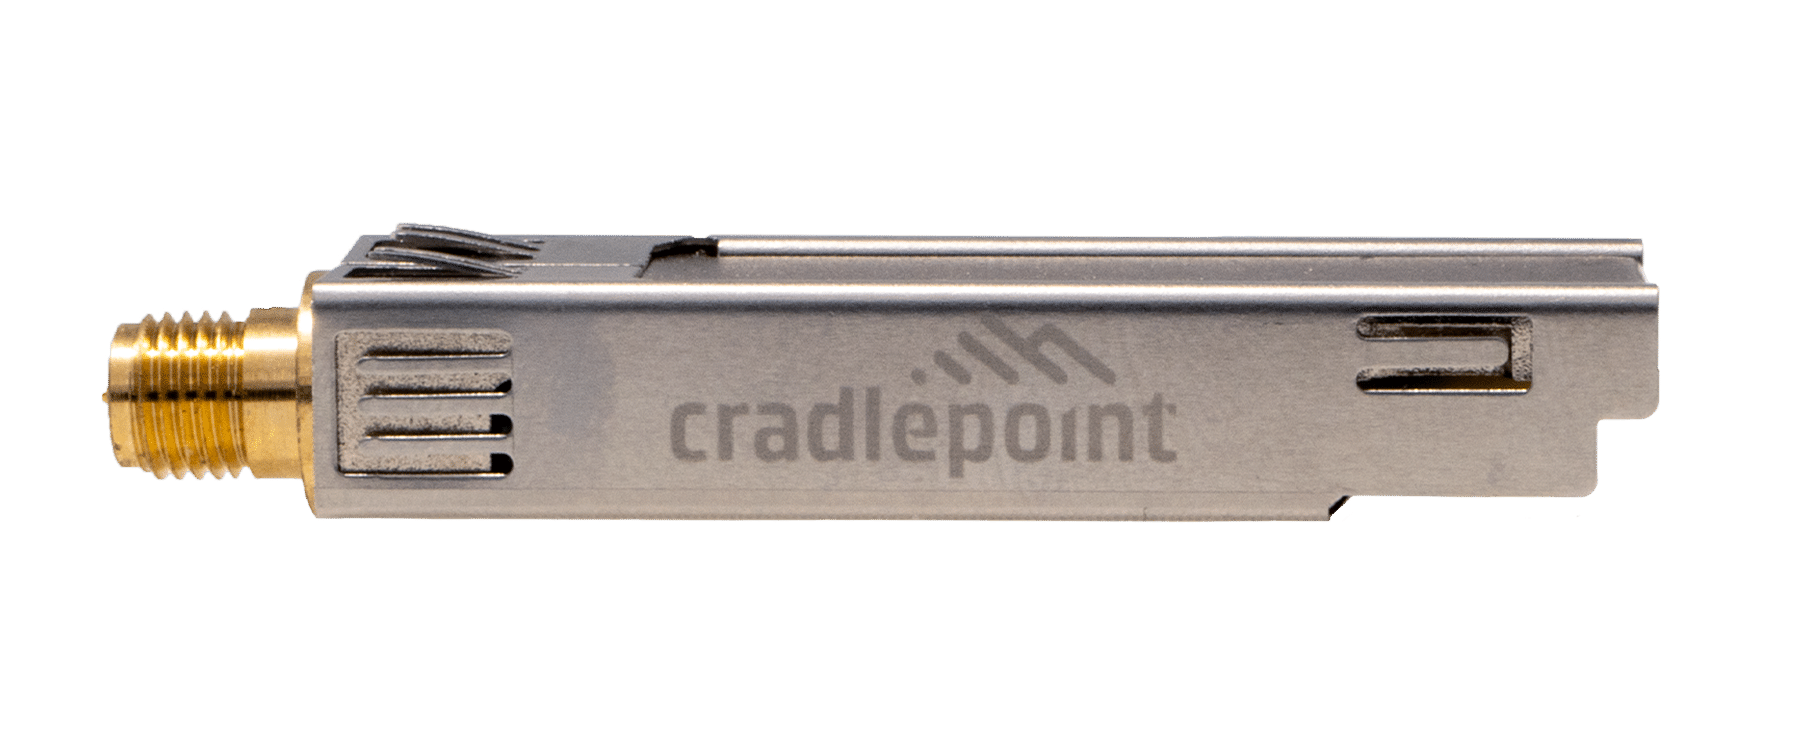 Módulo Bluetooth de Cradlepoint MC20BT para E300 y E3000